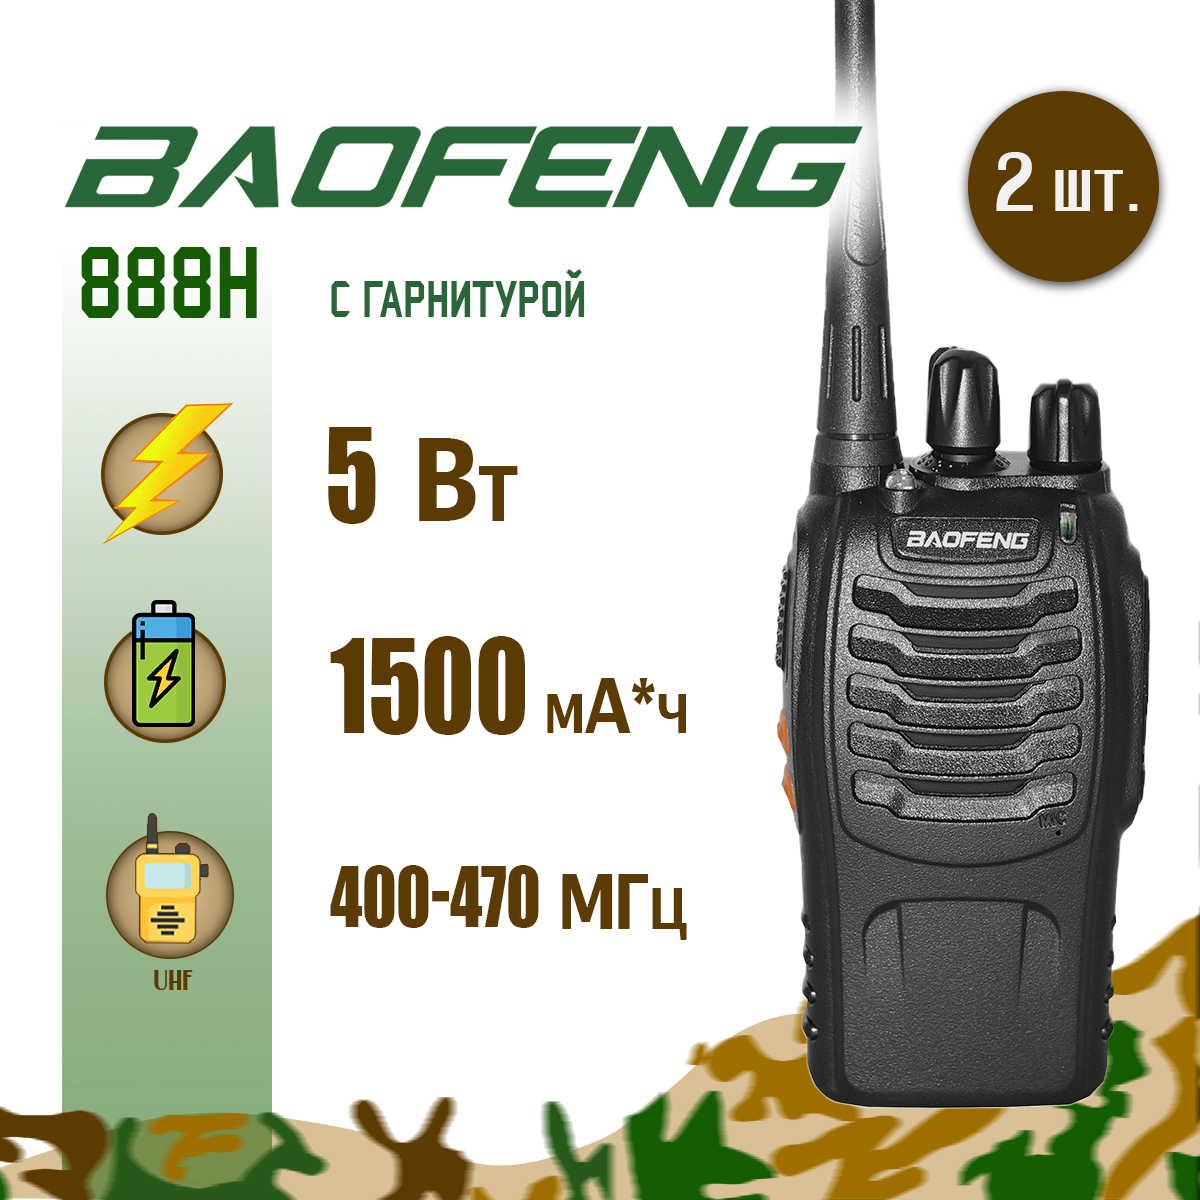 Портативная радиостанция Baofeng BF-888s комплект 2 шт черная (до 7 км) - купить в Москве, цены на Мегамаркет | 600008848403